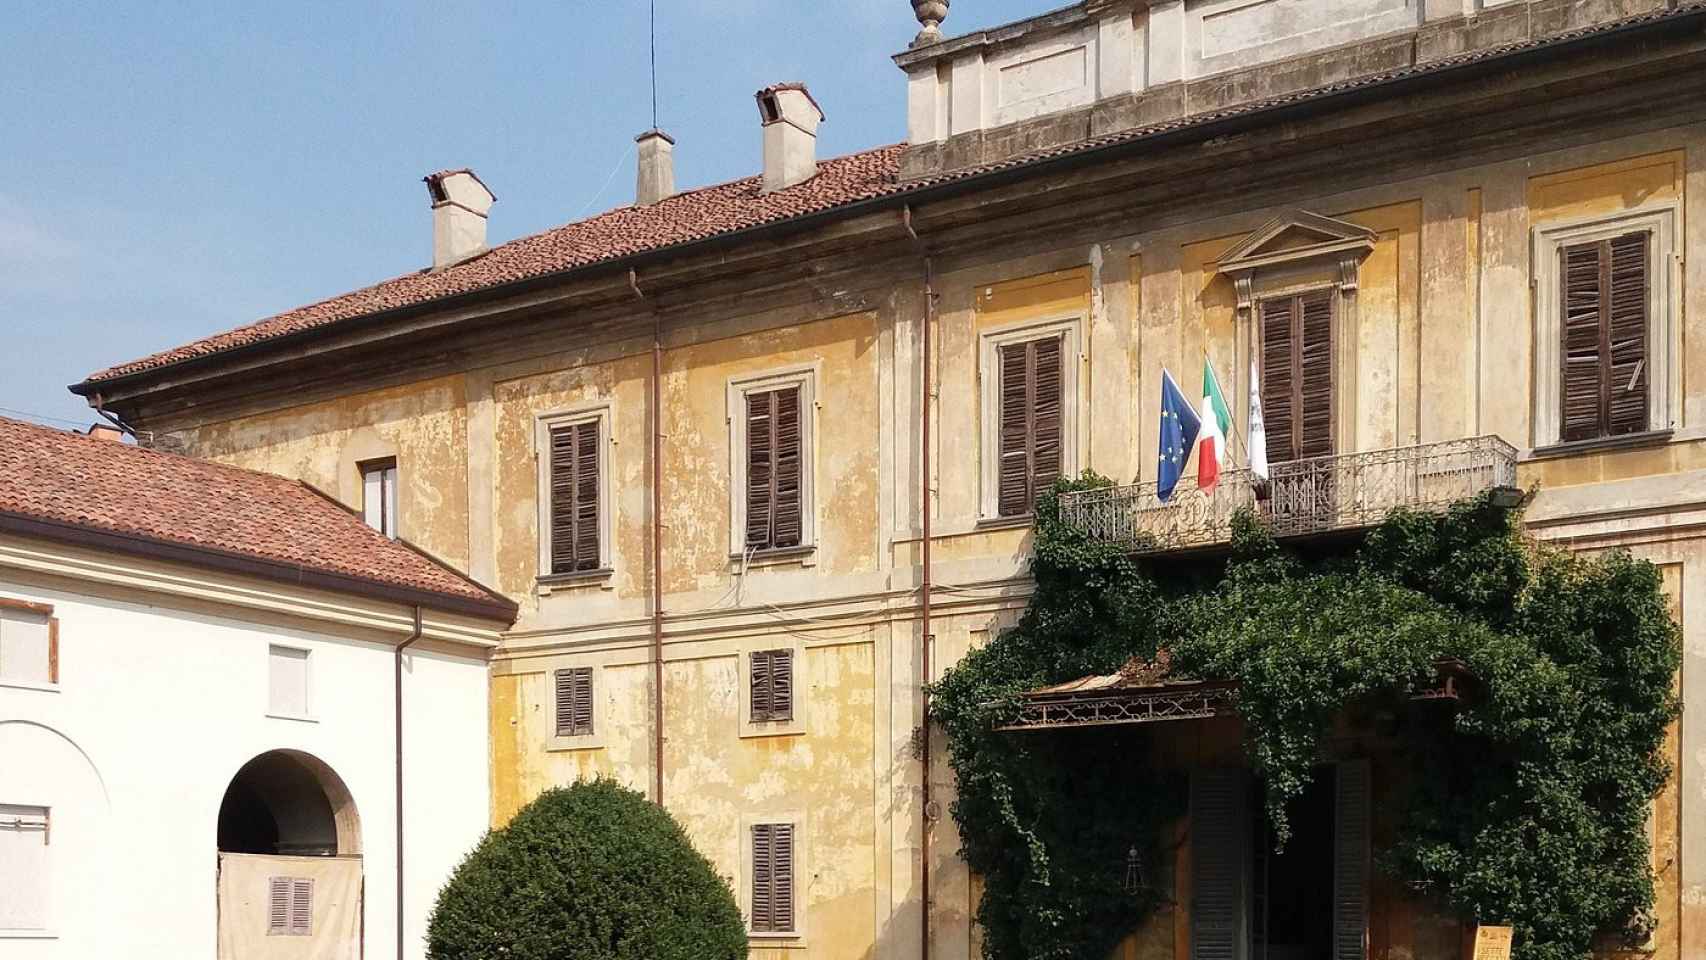 Villa Sottocasa, propiedad que deja Berlusconi en Lombardía.